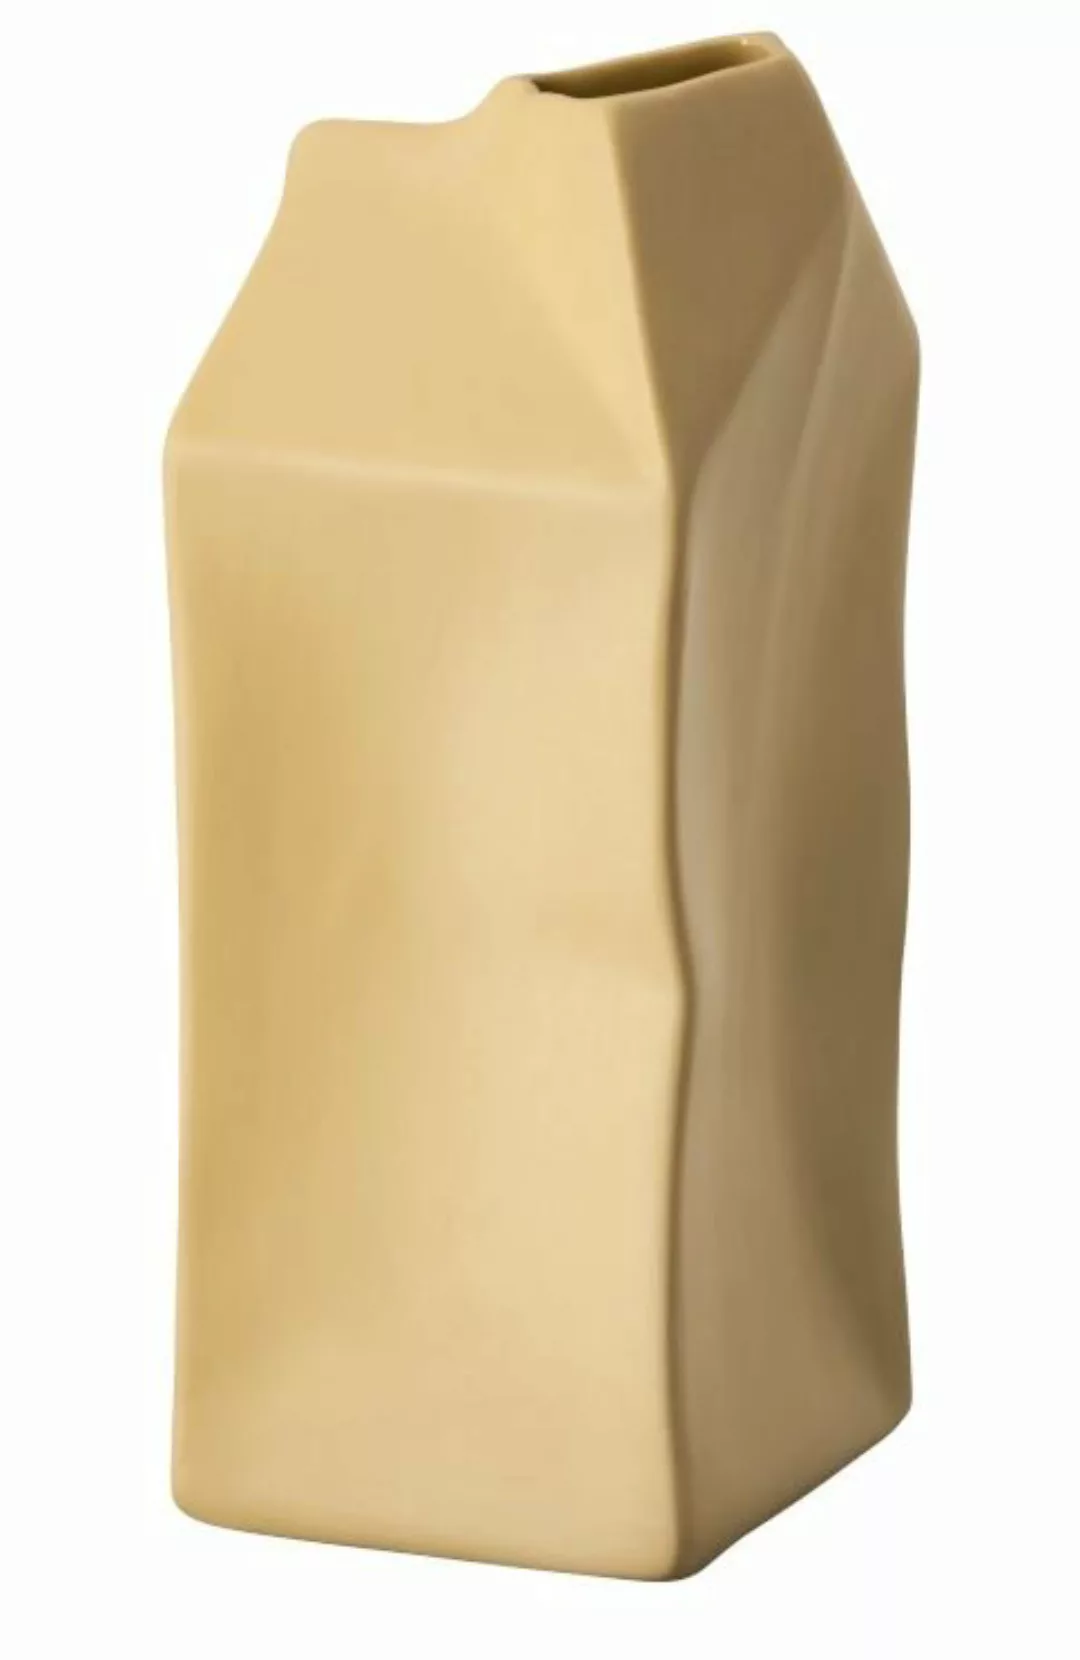 Rosenthal Vasen Miniaturvase Do not Litter Pacco Bello Fossil 11cm (gelb) günstig online kaufen